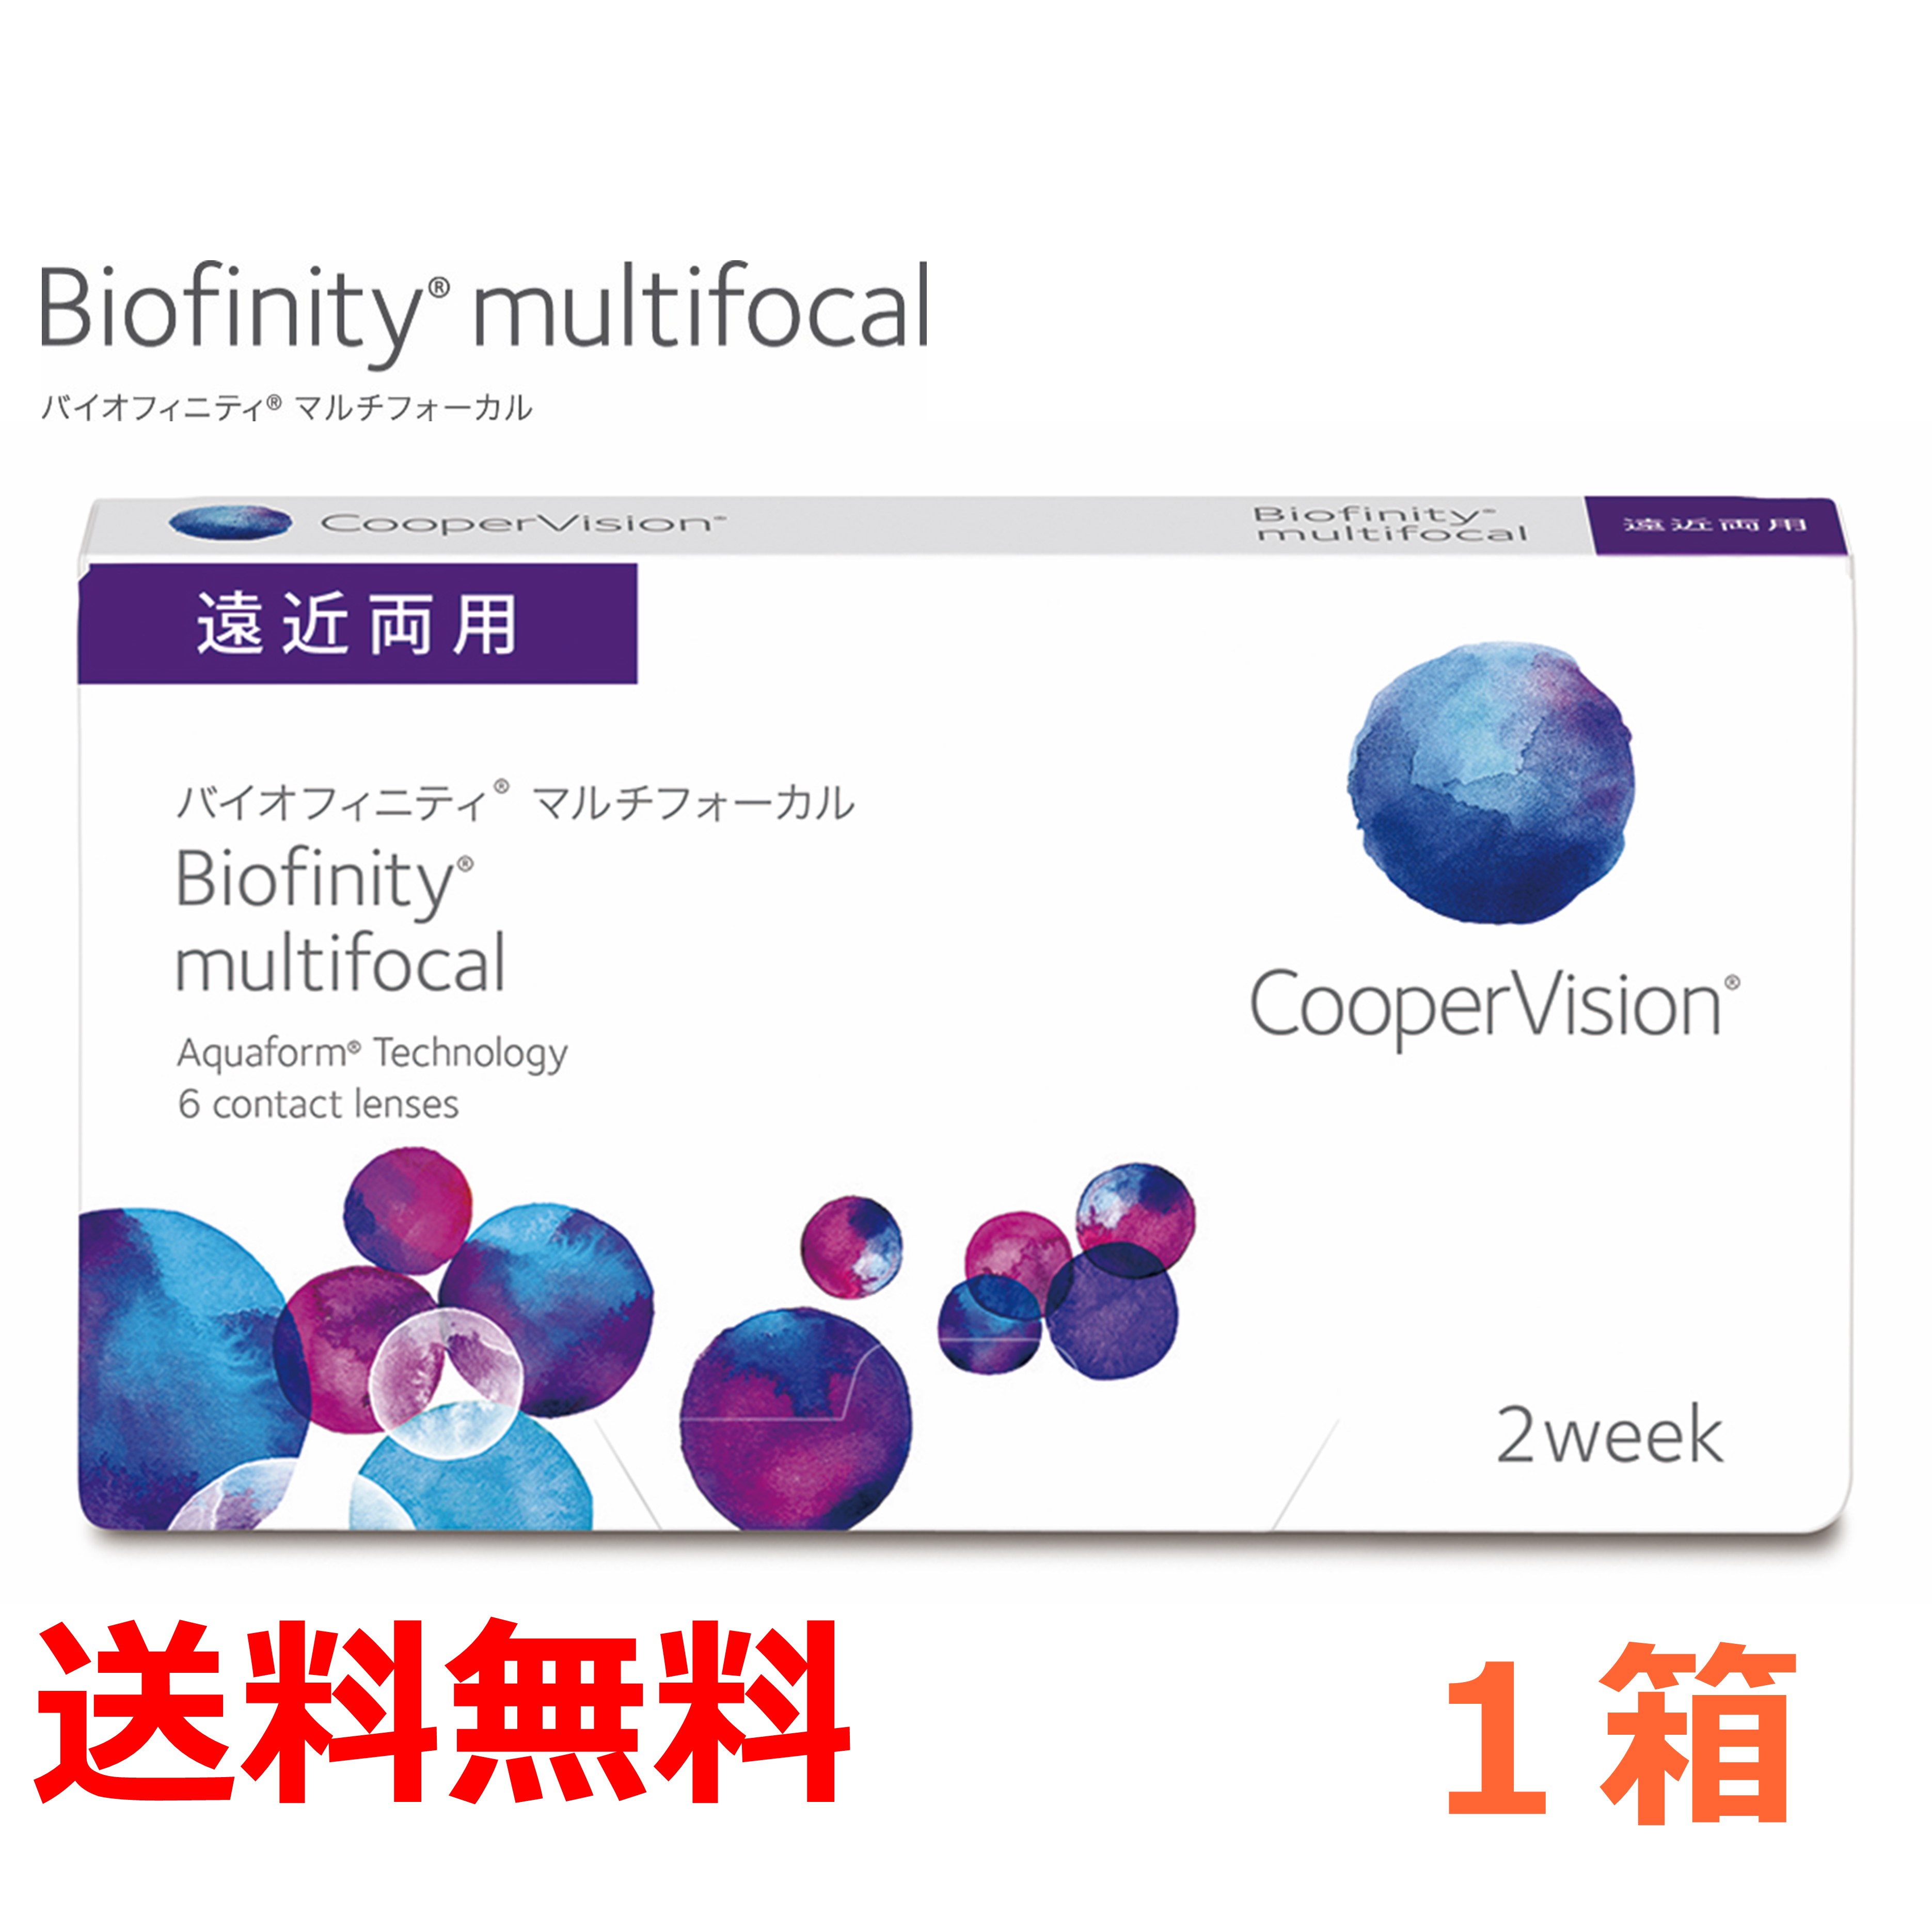  遠近両用 バイオフィニティ Biofinity Multifocal 6枚入 6枚パック × 1箱 コンタクト コンタクトレンズ ソフト 2week 2週間 マルチフォーカル クーパービジョン cooper vision